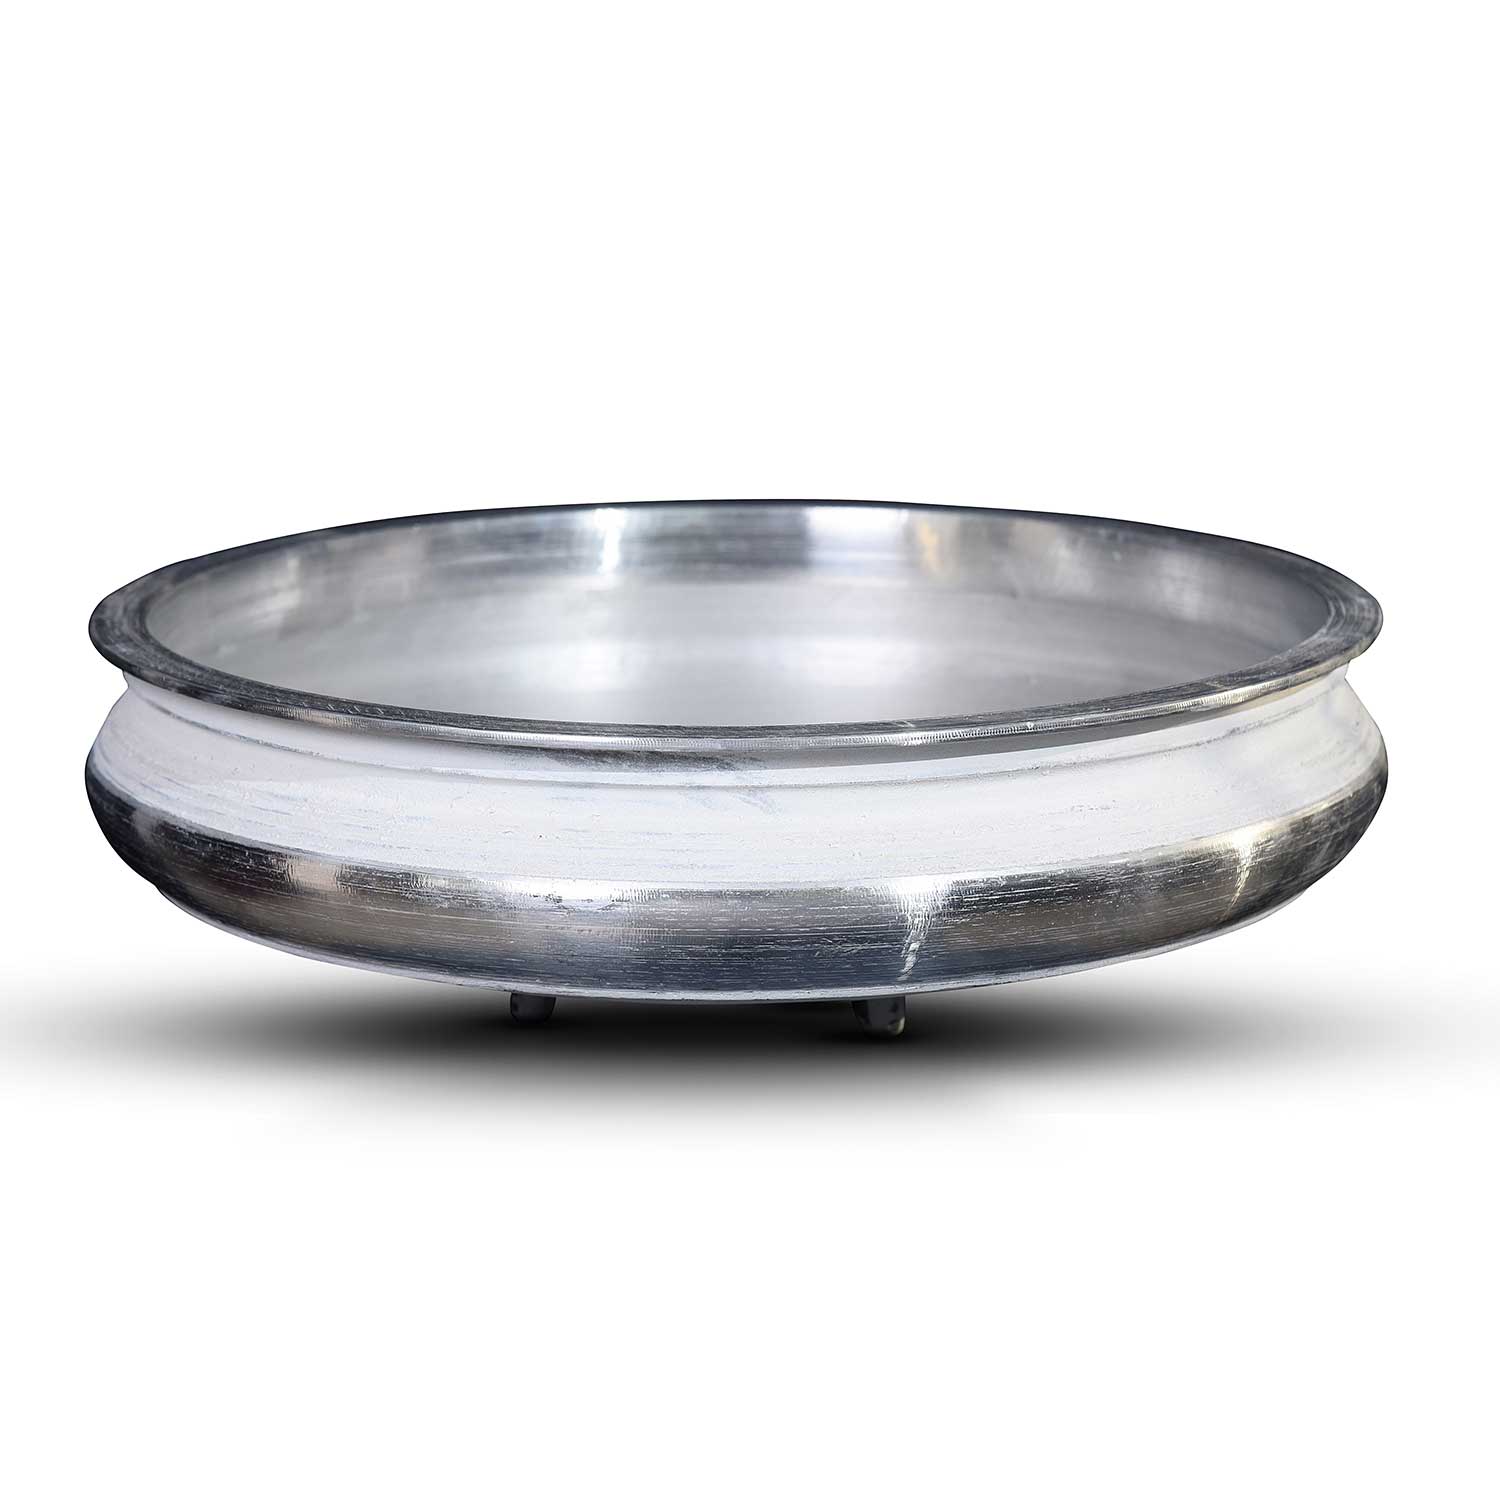 Indalium/Casted Aluminium Uruli Pot, 99.5% Pure Aluminium, Scratch Resistant, Light Weight and Easy to Handle (17.5 Inch Dia)